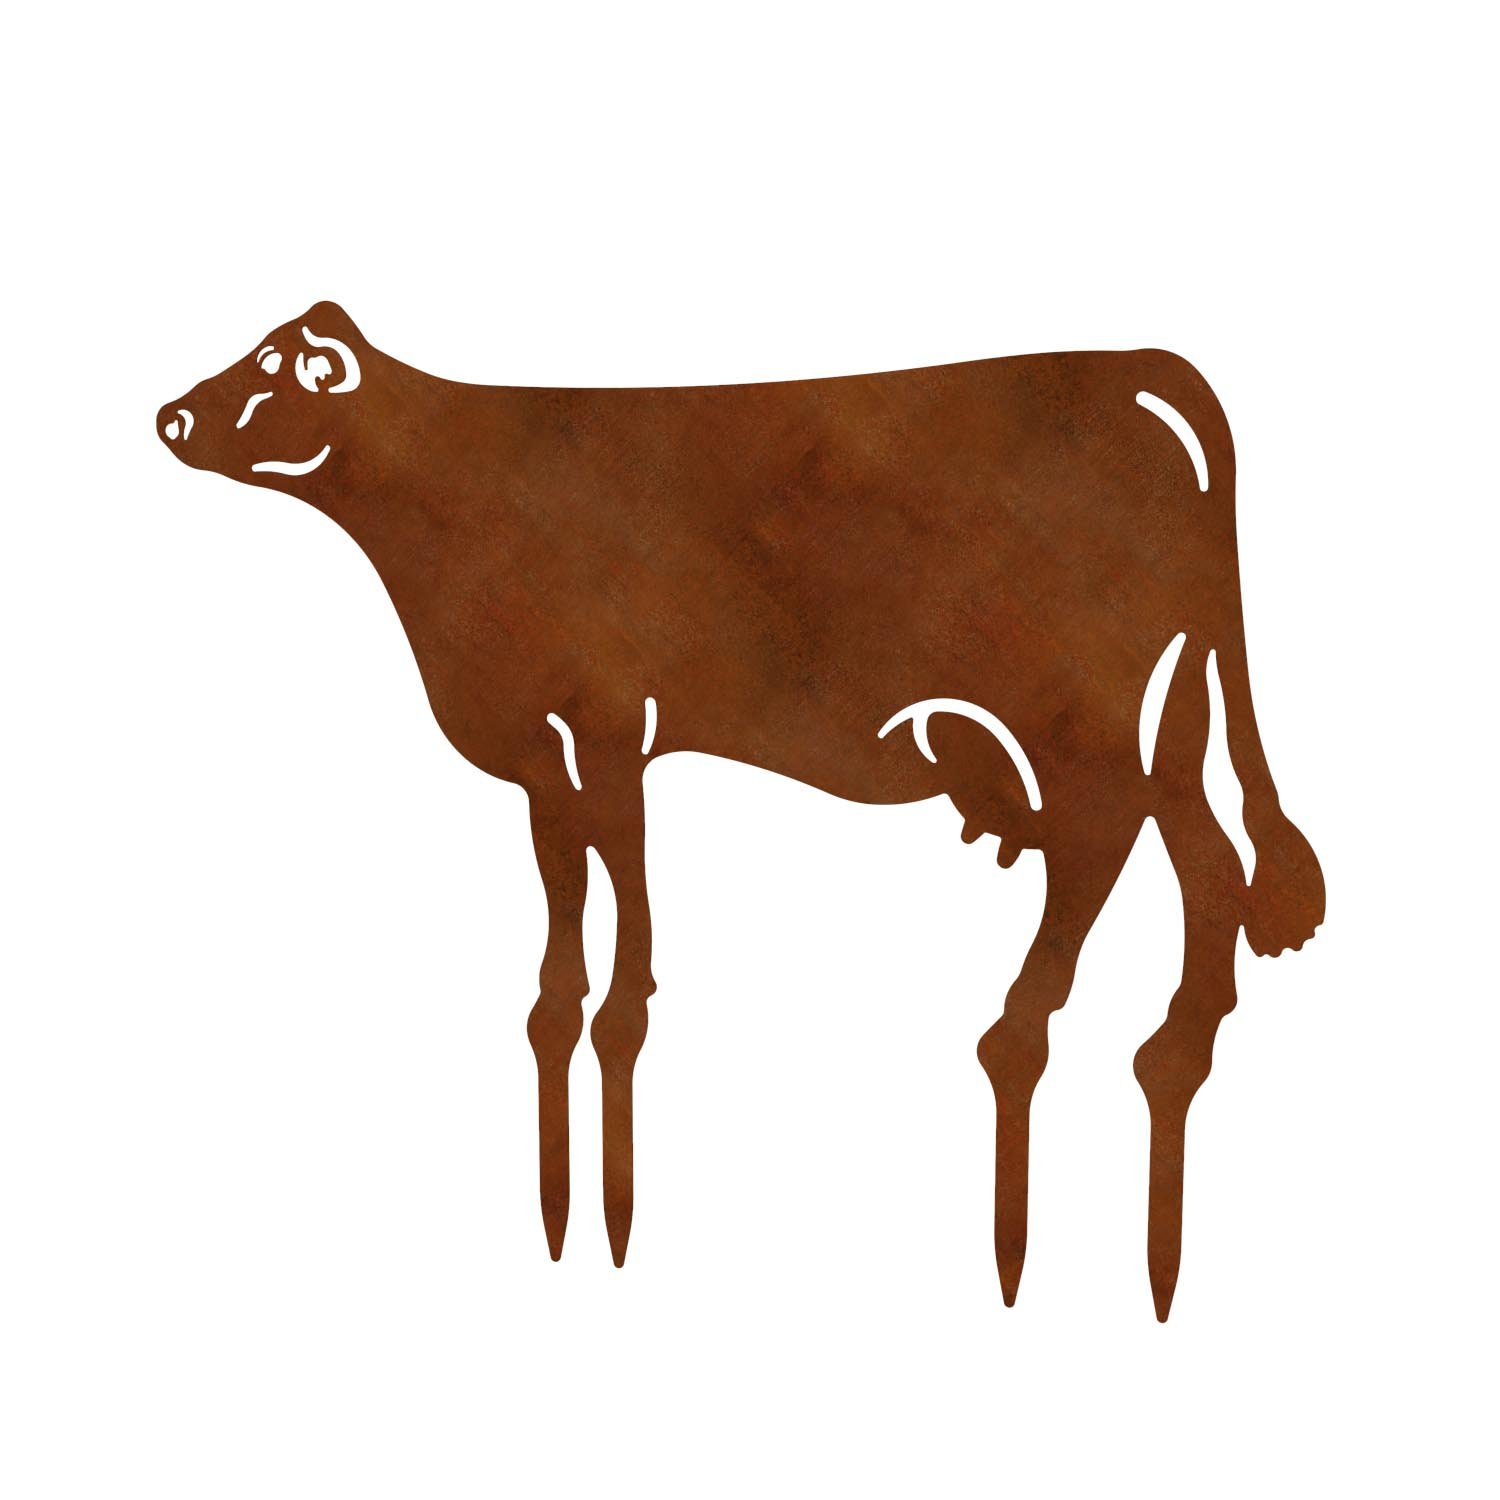 Gartenfigur Kuh, aus Cortenstahl, Höhe 100 cm, steckbar